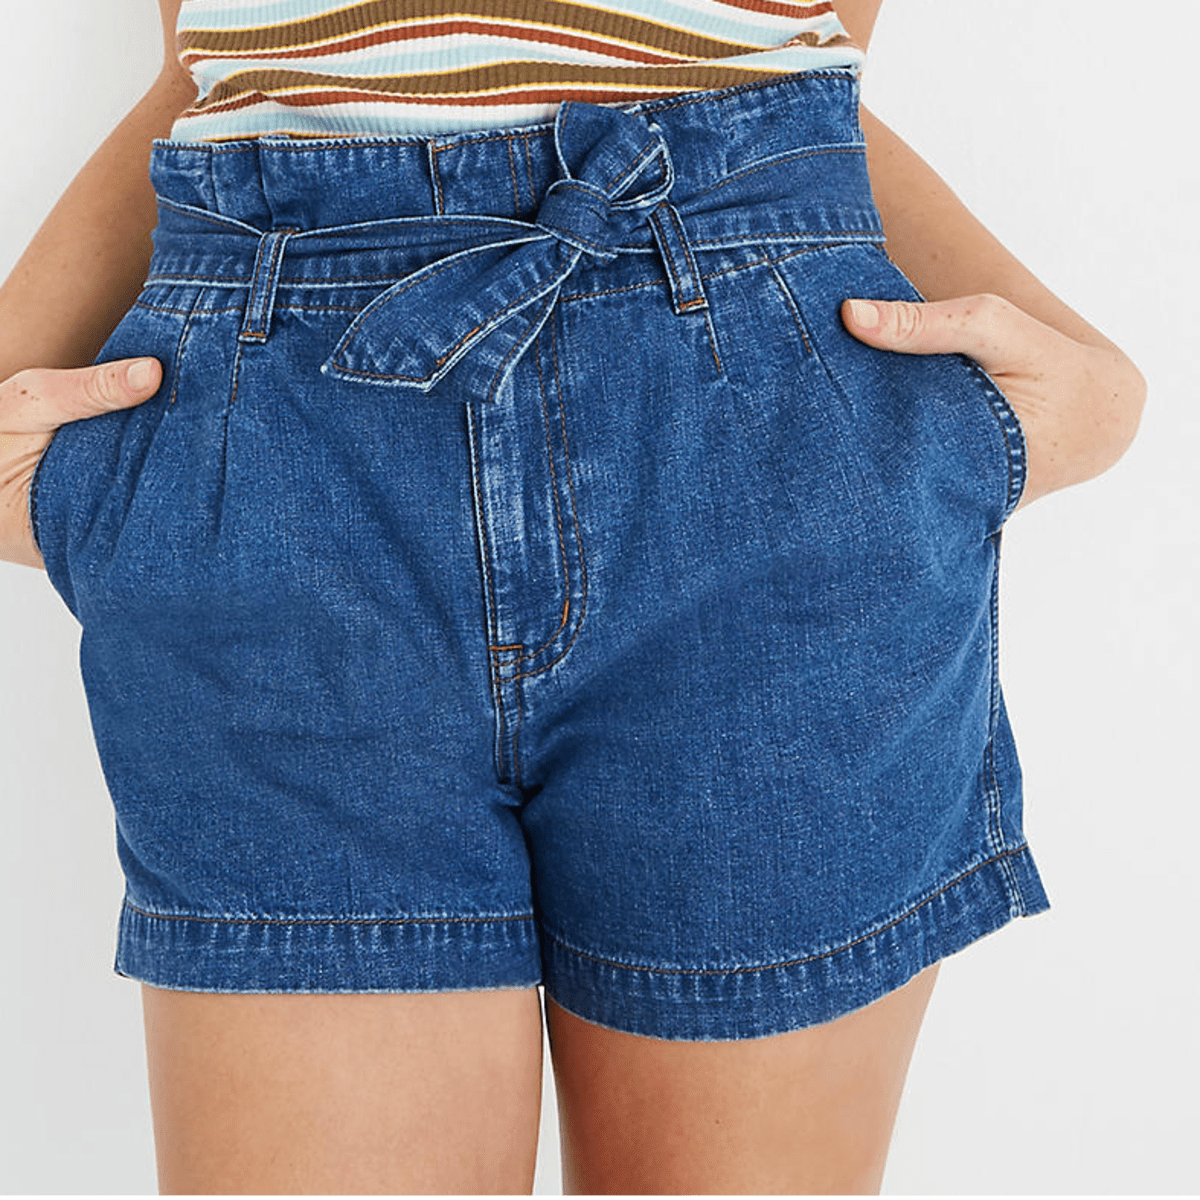 paperbag jean shorts